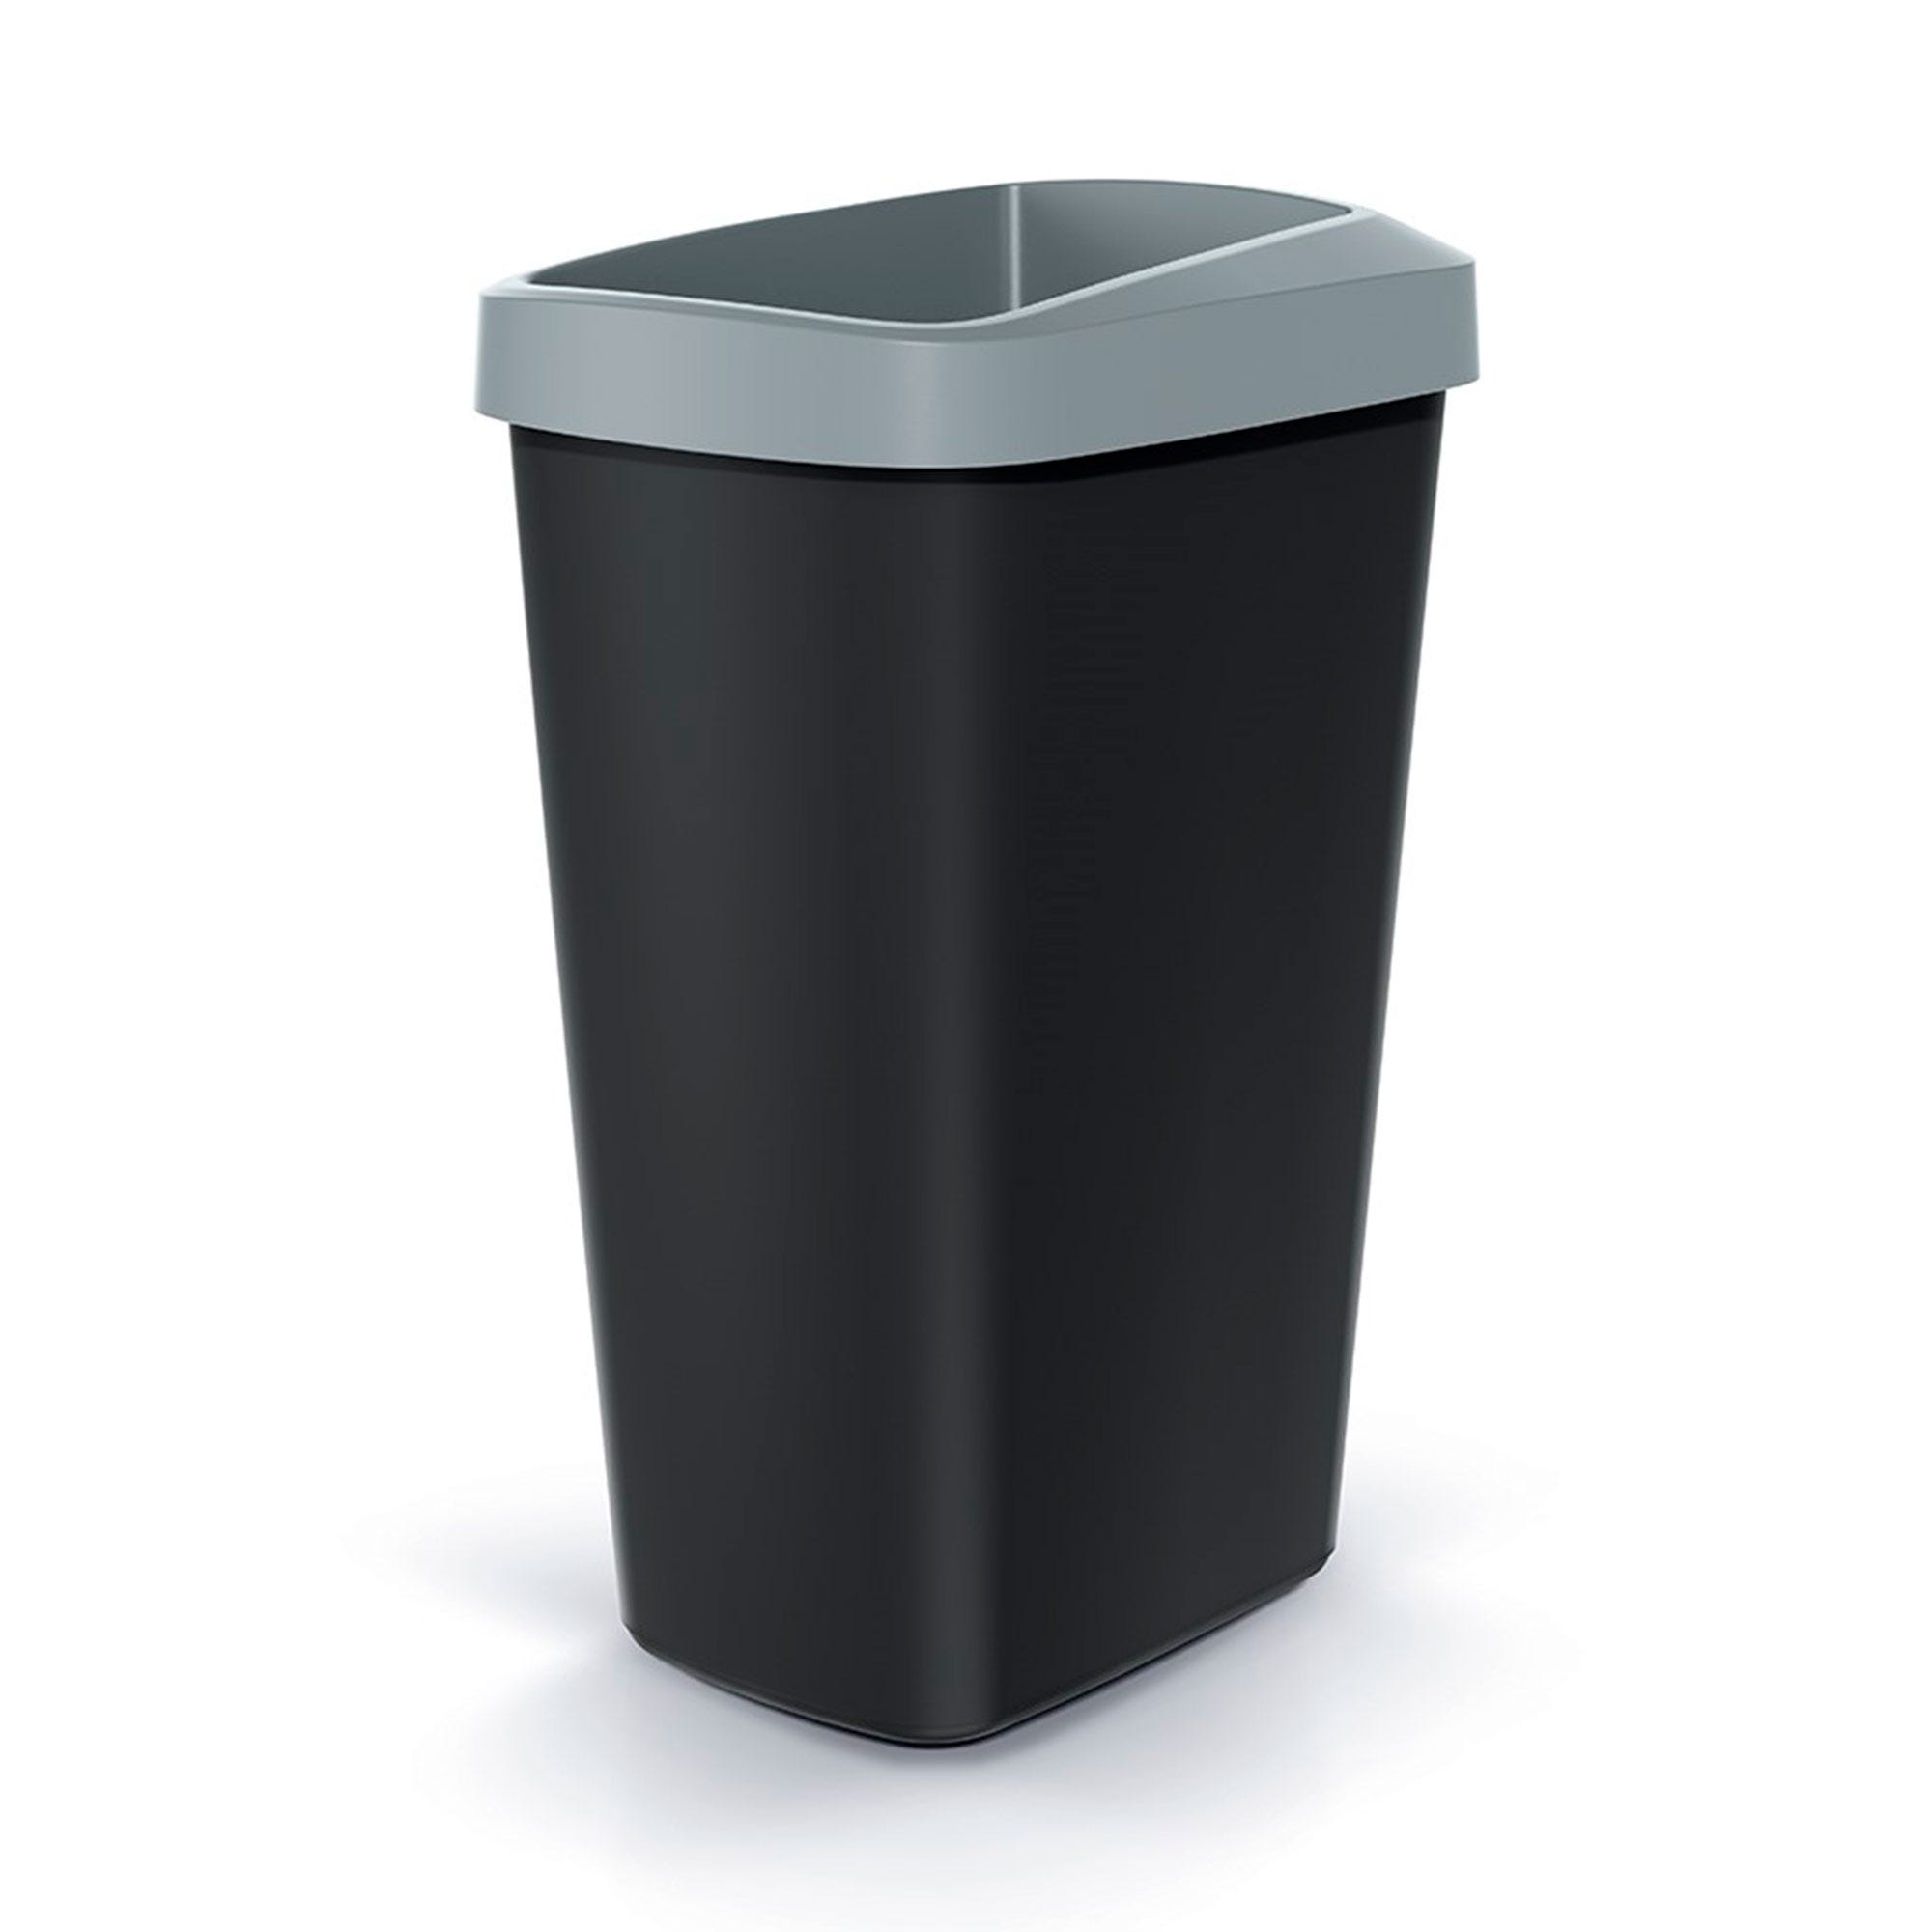 Cubo basurero vertical reciclaje en color gris 60 litros. Cubo para re –